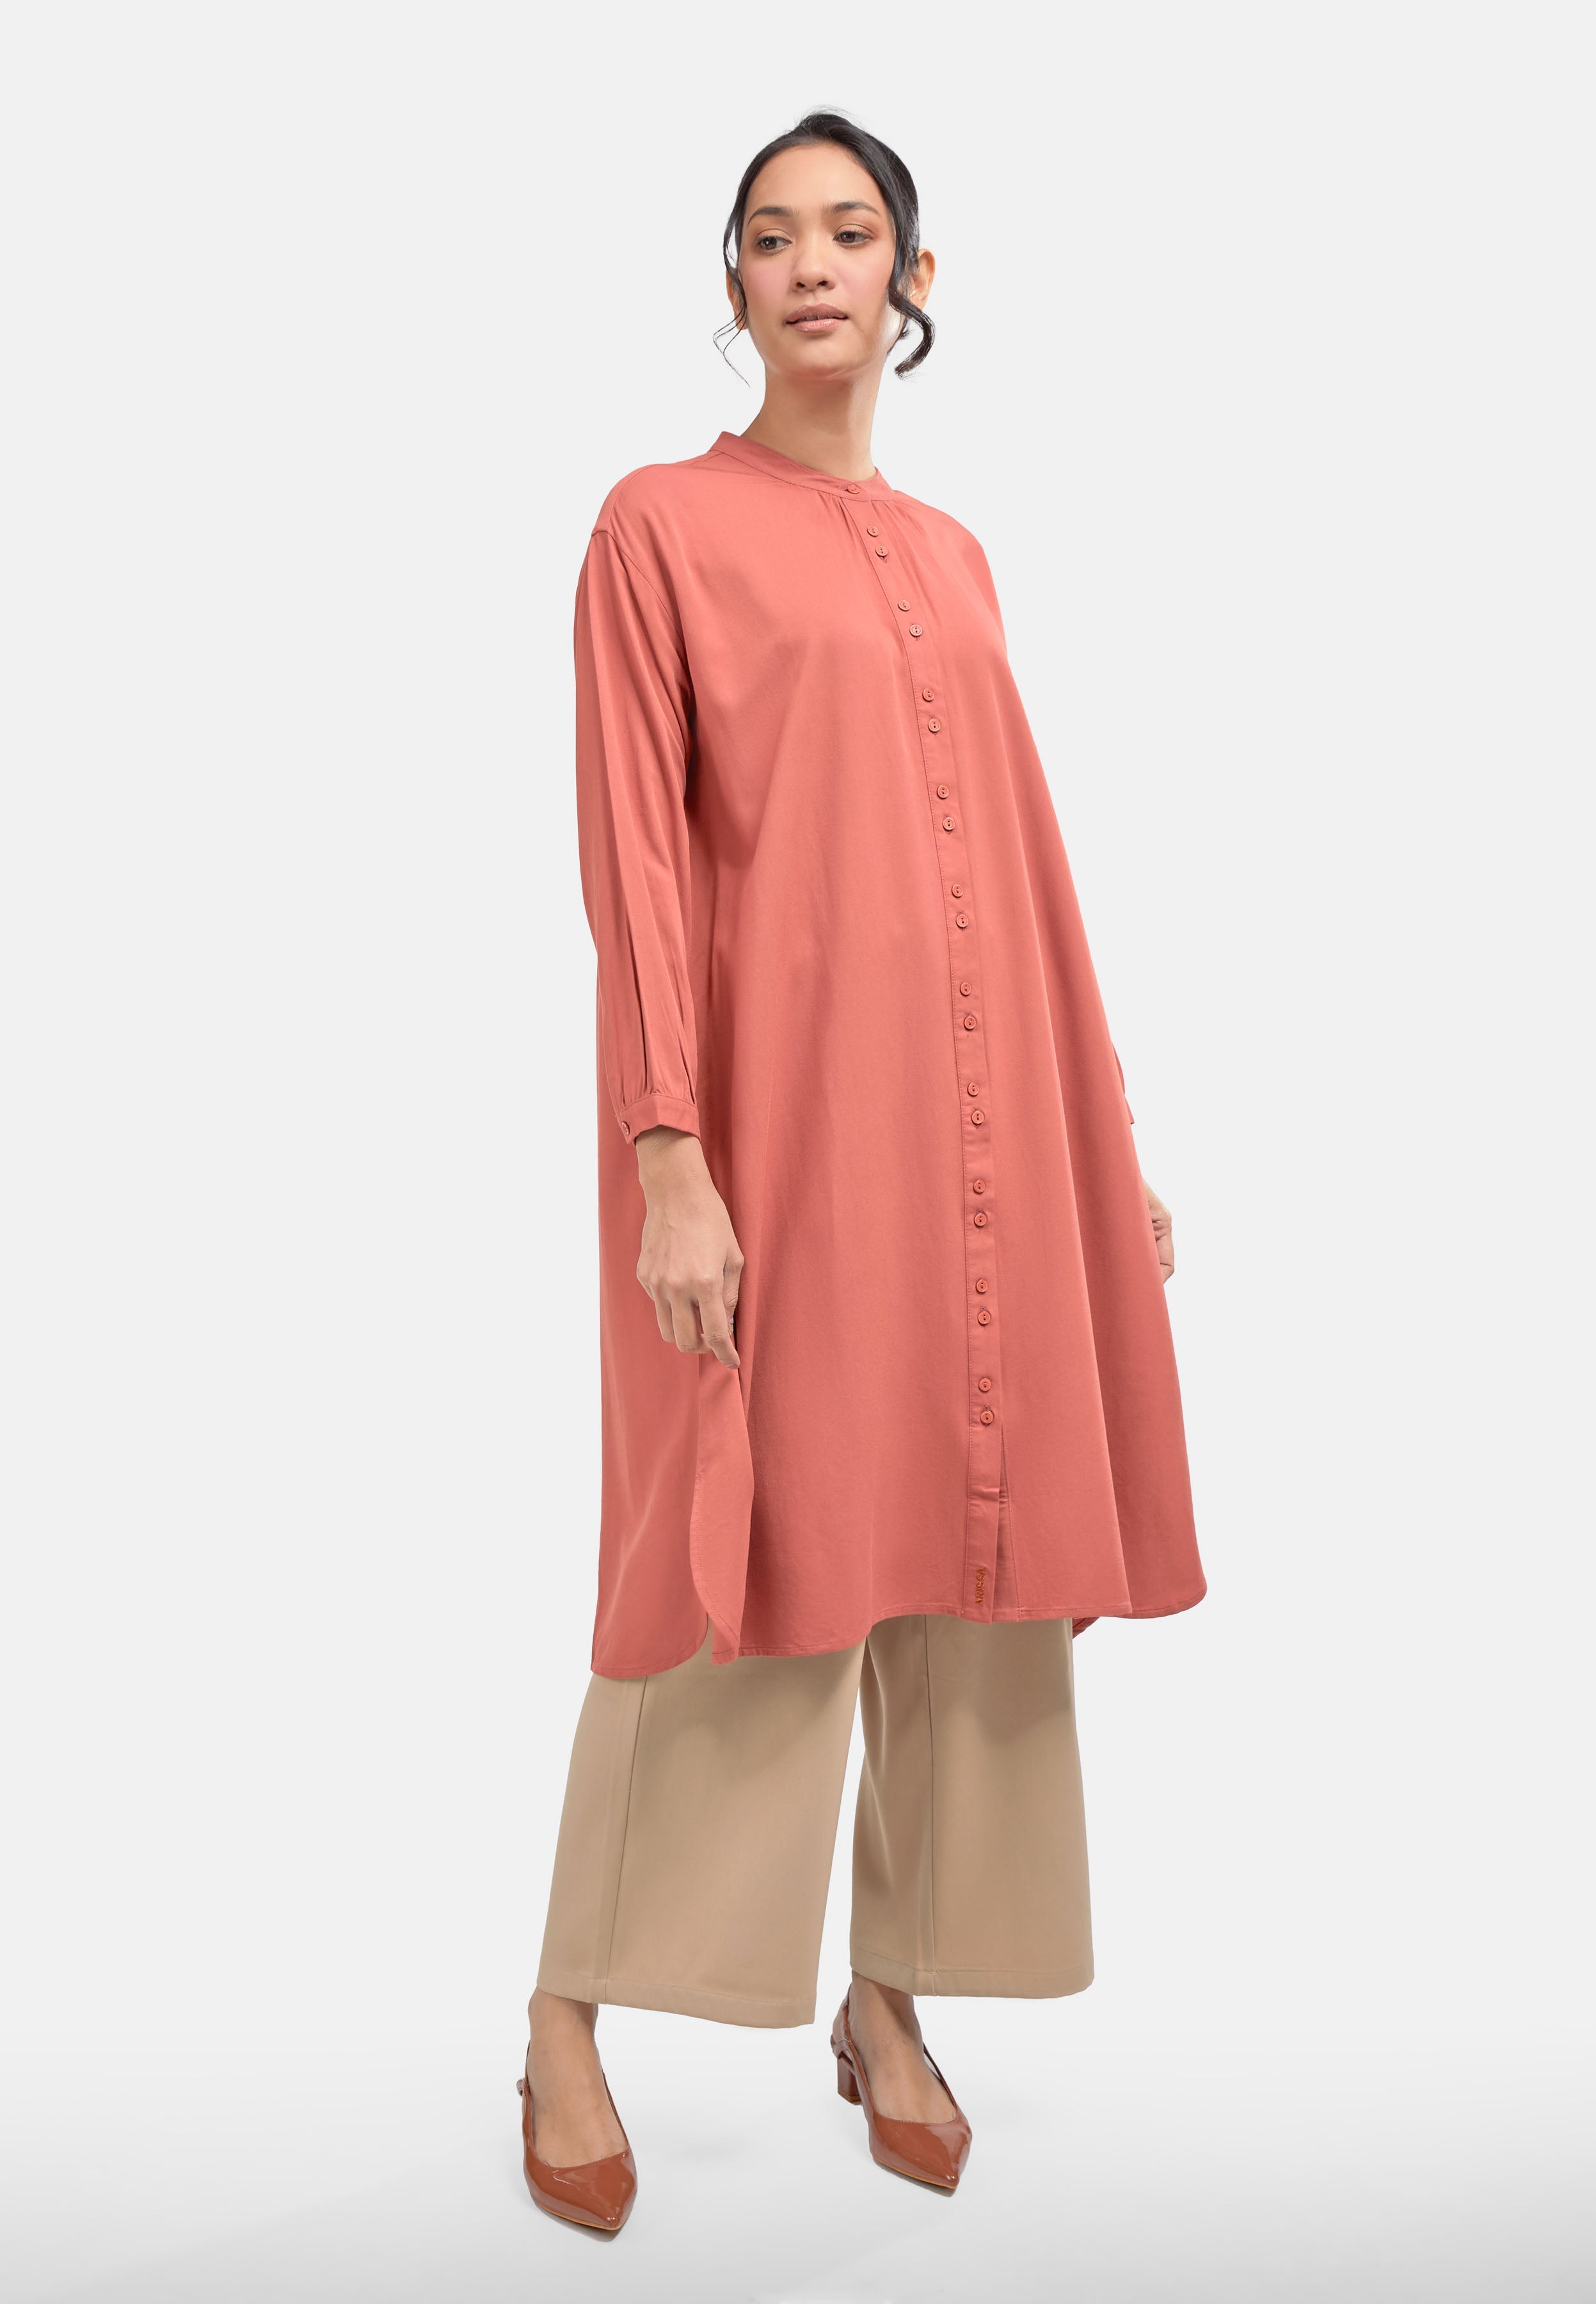 Arissa Long Sleeve Shirtdress - ARS-19166 (MD2)